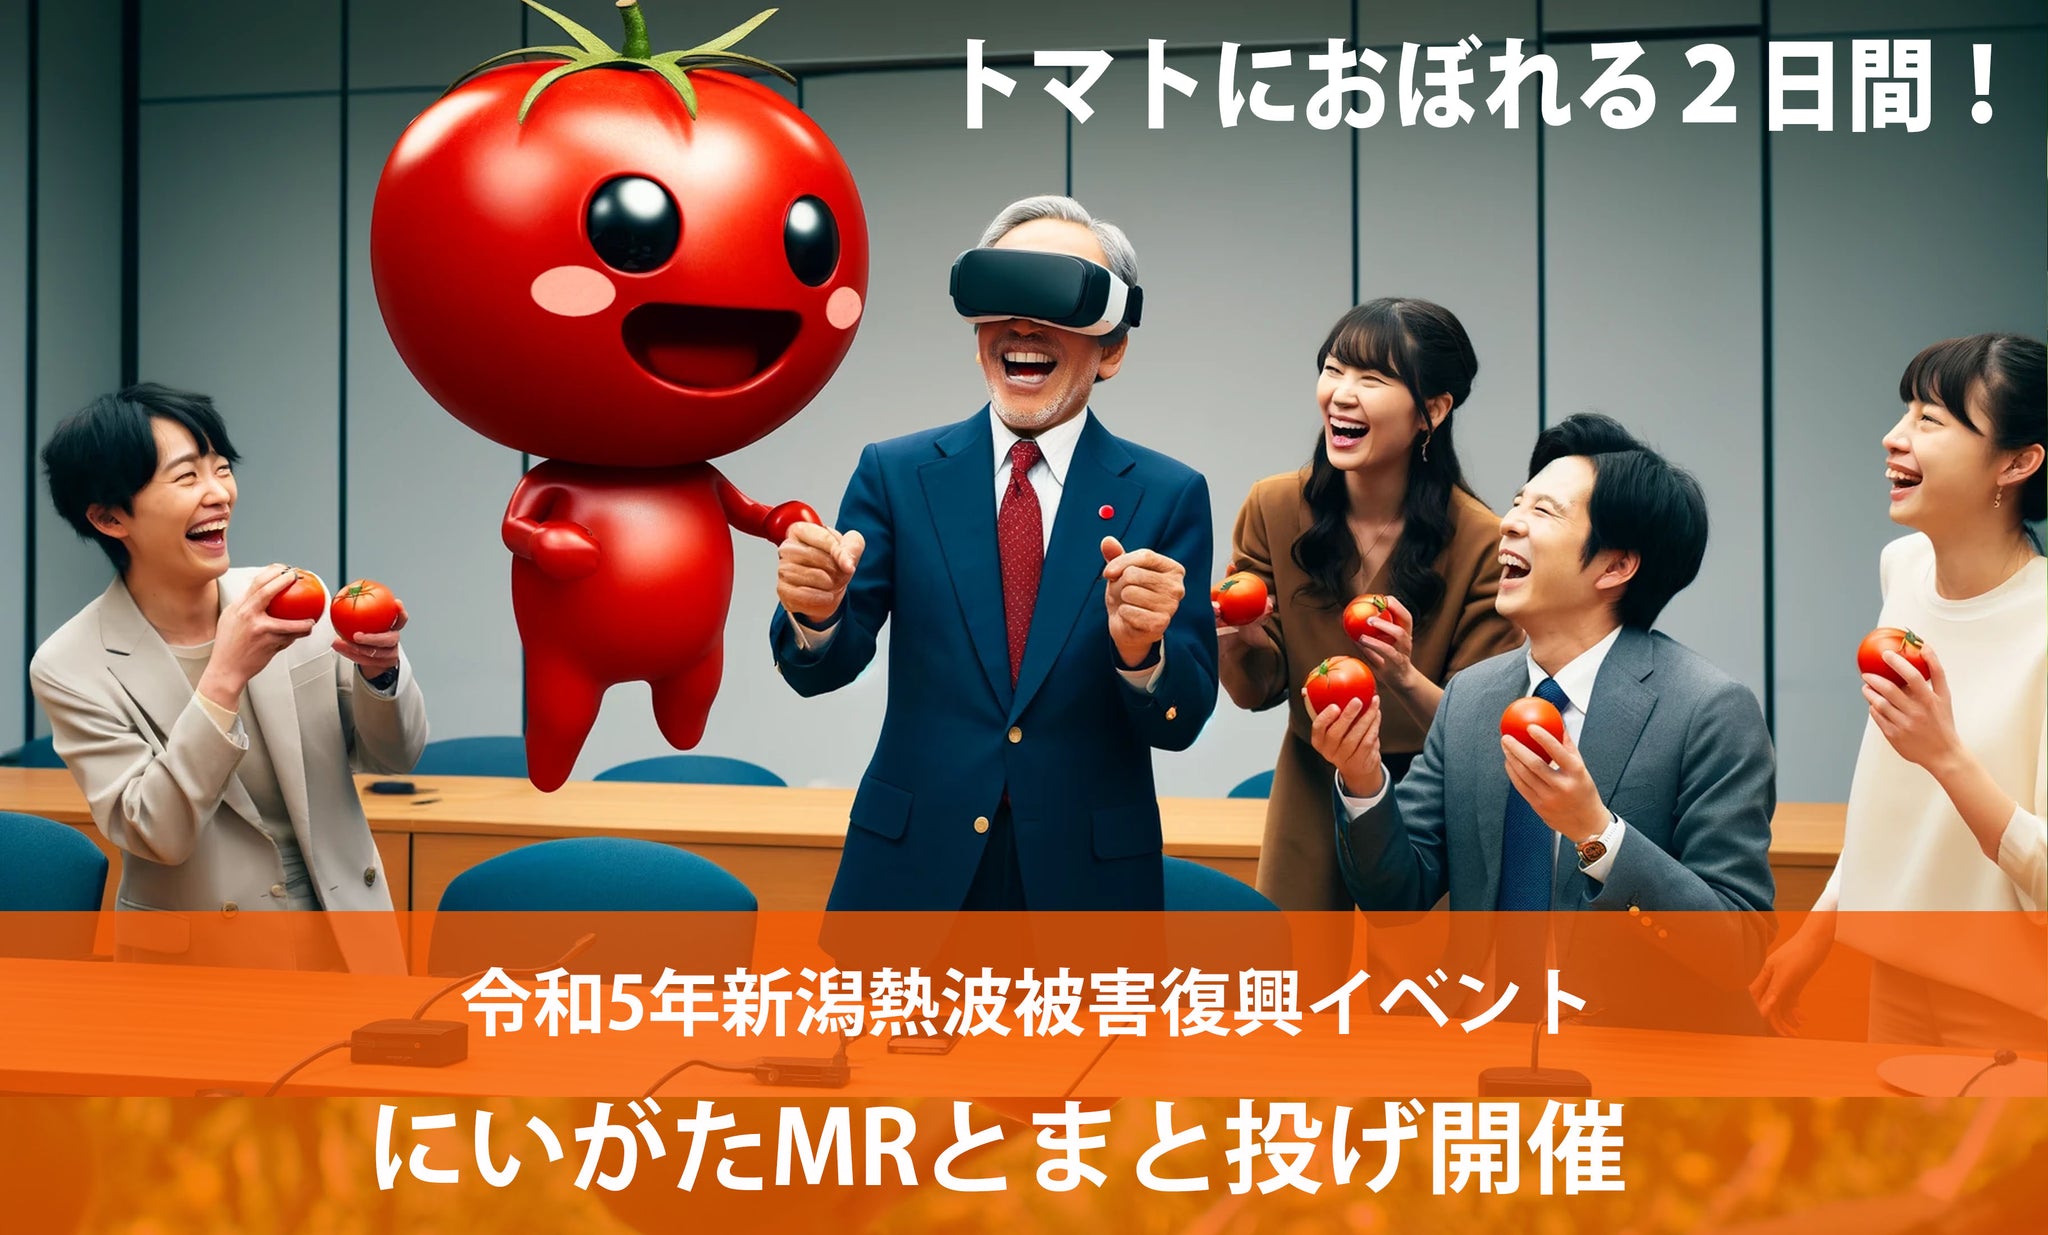 令和 5 年新潟フェーン熱波被害からの復興に向けて  日本初の「複合現実（MR）とまと投げ」による  「新潟トマト」の魅力をつたえるイベントを開催